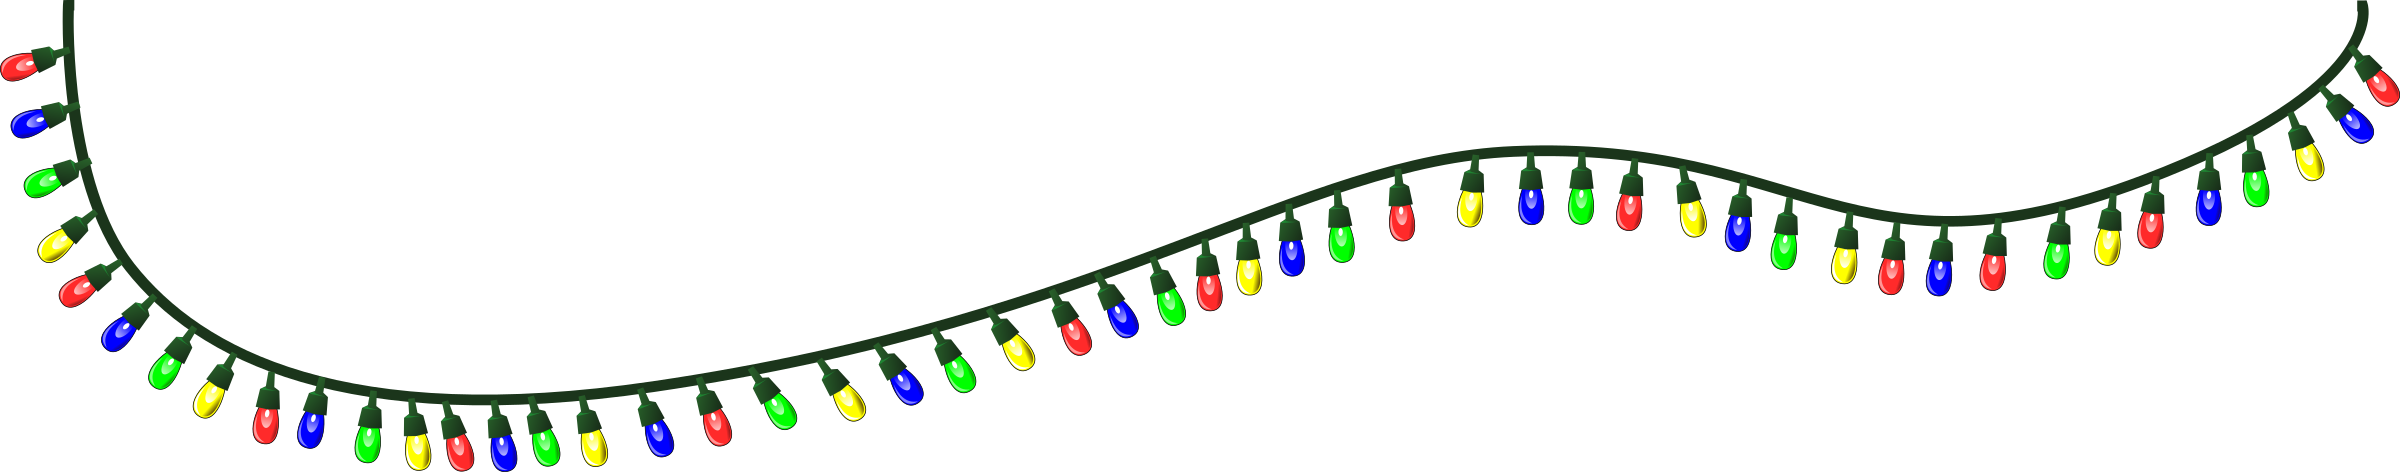 Download PNG image - Christmas Lights Transparent Background 